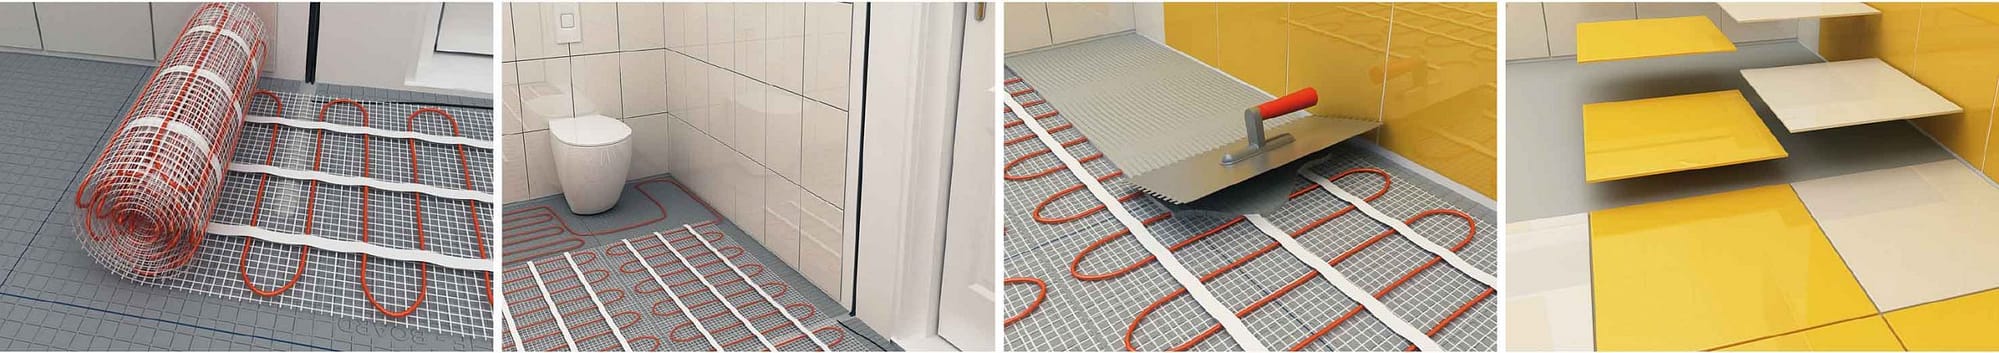 Riscaldamento radiante elettrico a pavimento con cavi ECOFLOOR fasi installazione tappeto